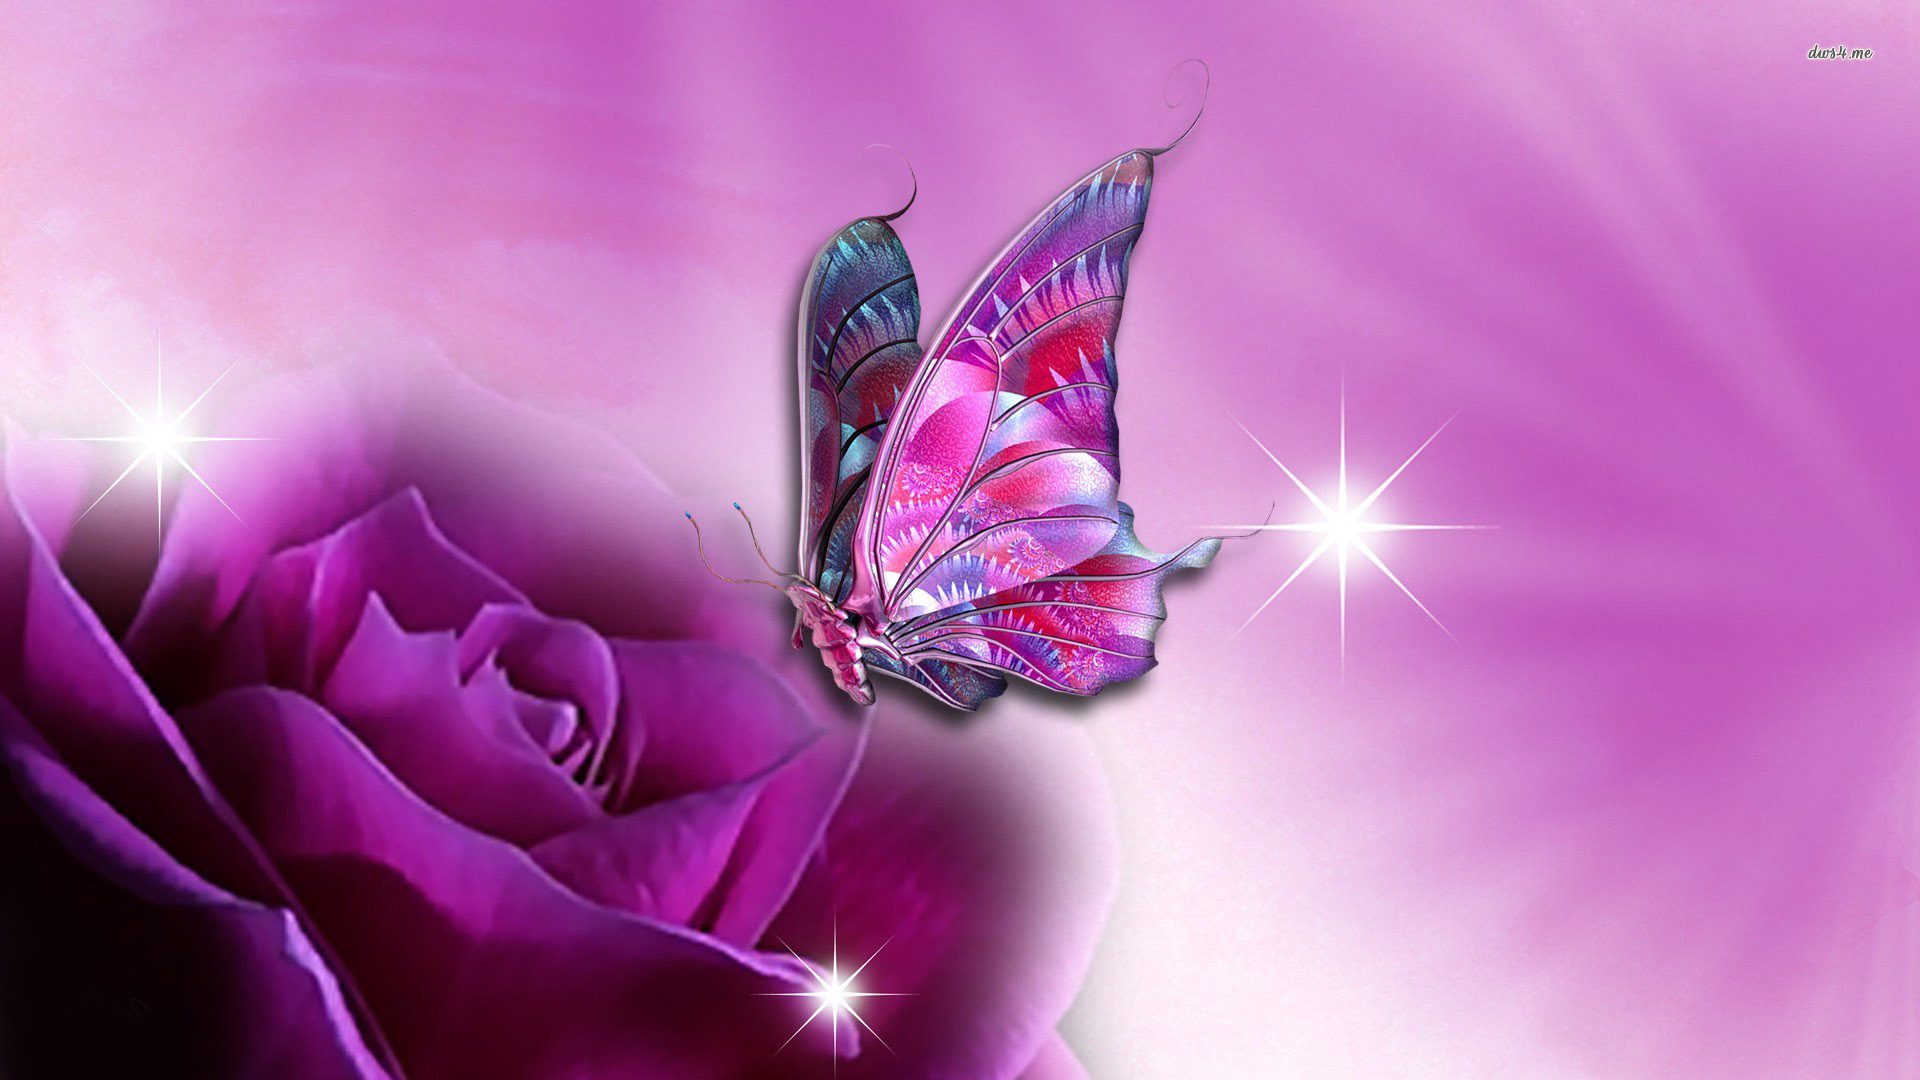 Butterfly on purple rose wallpaper 1280x800 Butterfly on purple rose